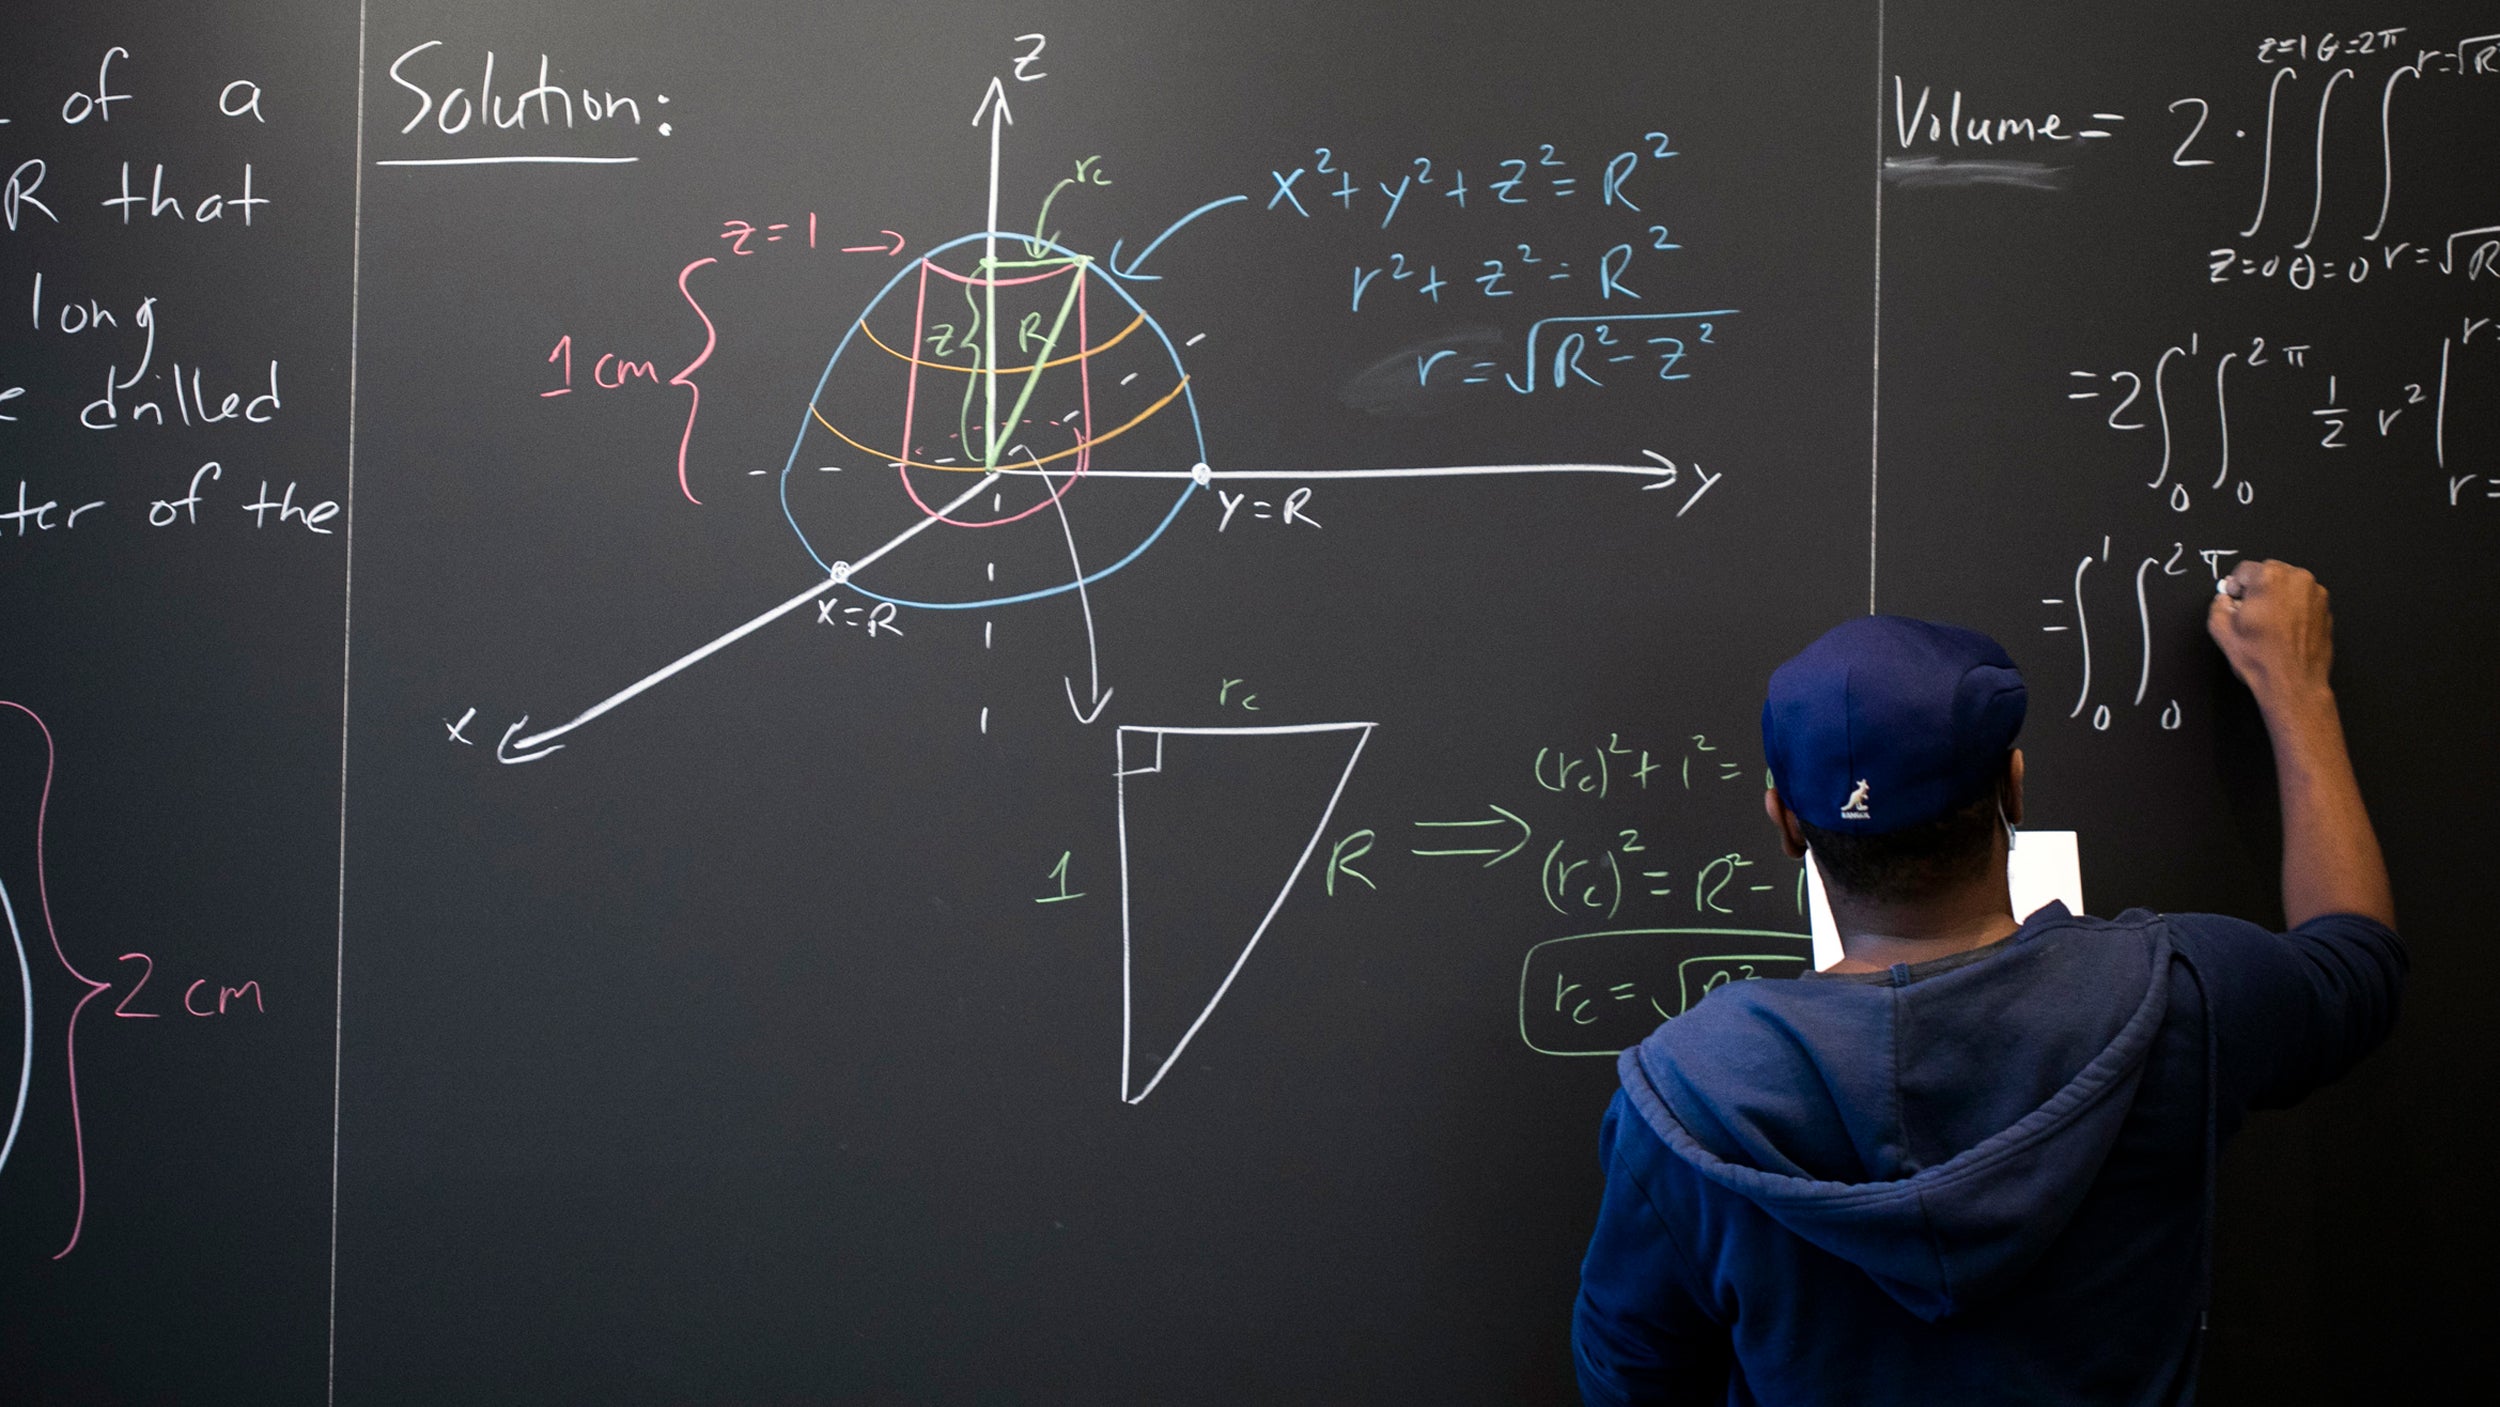 Hakim Walker writes on math lounge chalkboard.